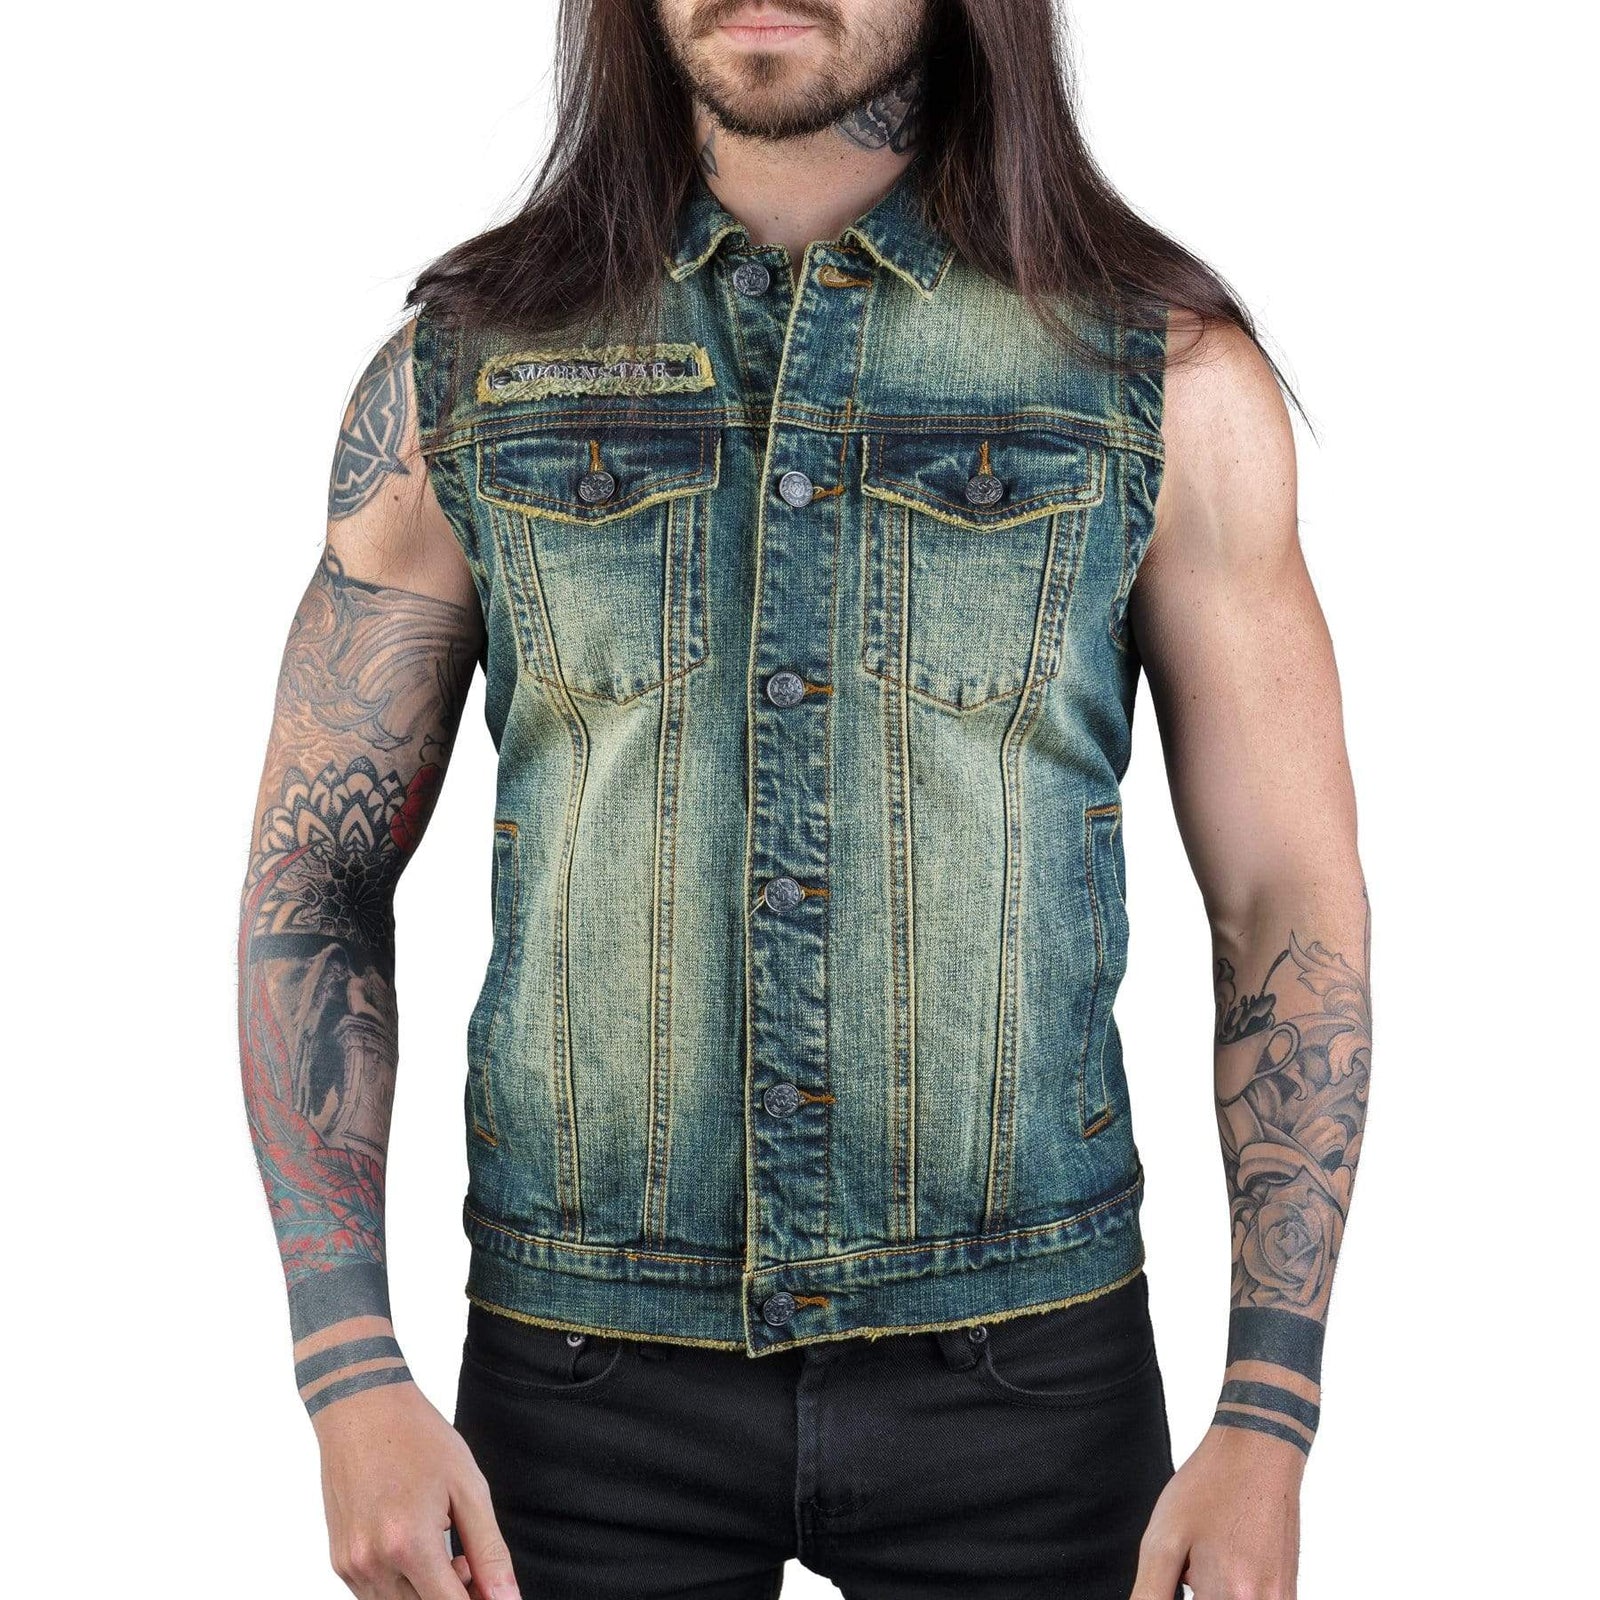 Rocker Mens Tops | Wornstar Clothing